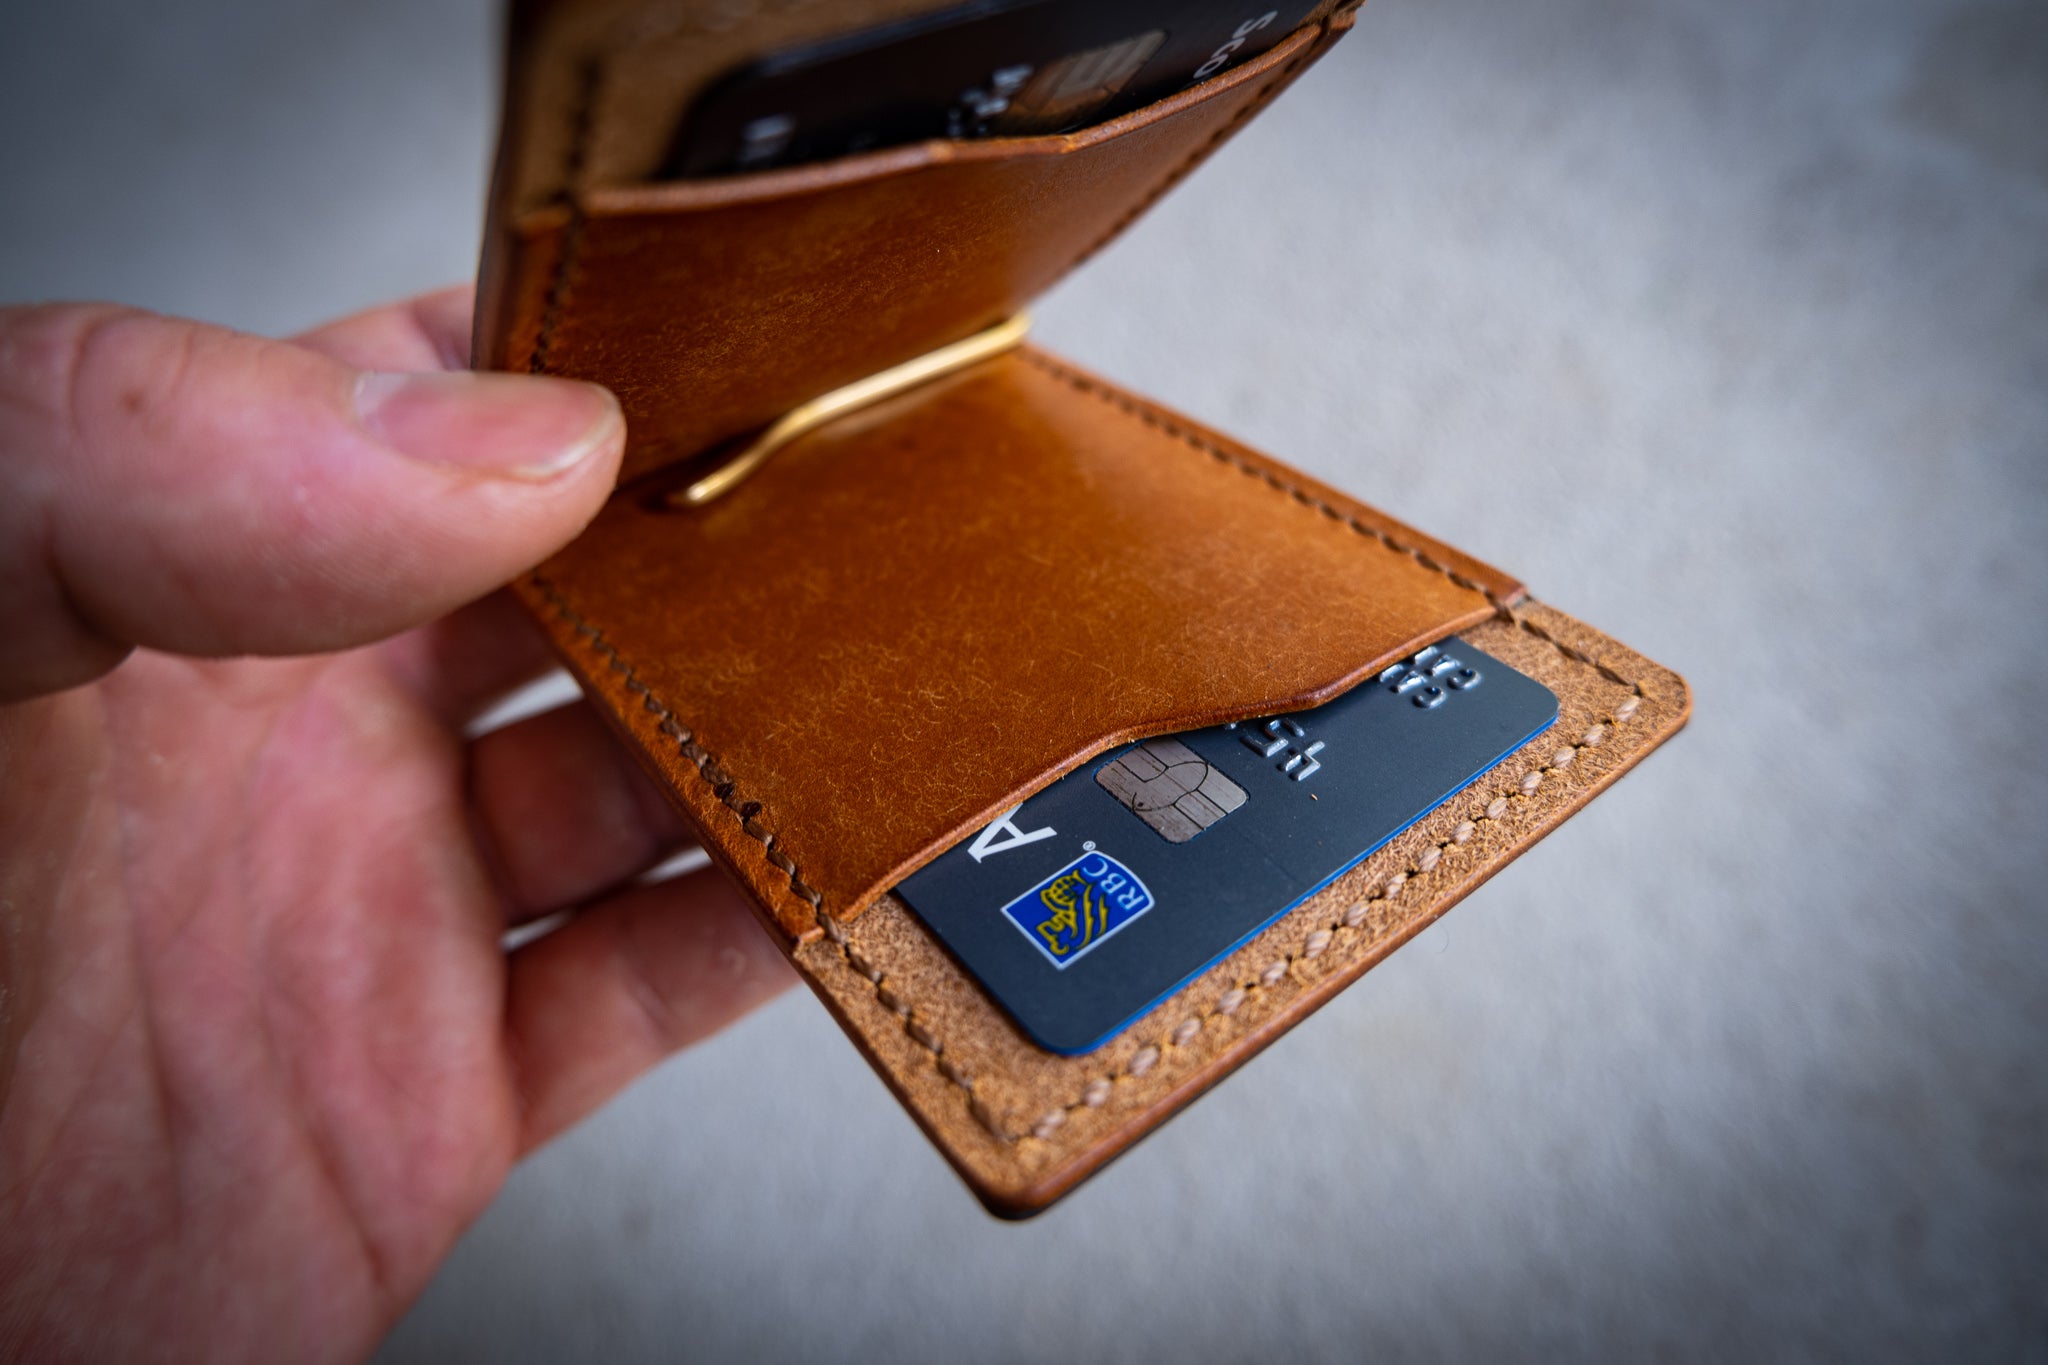 Money Clip Wallet - Blue and Cognac Pueblo